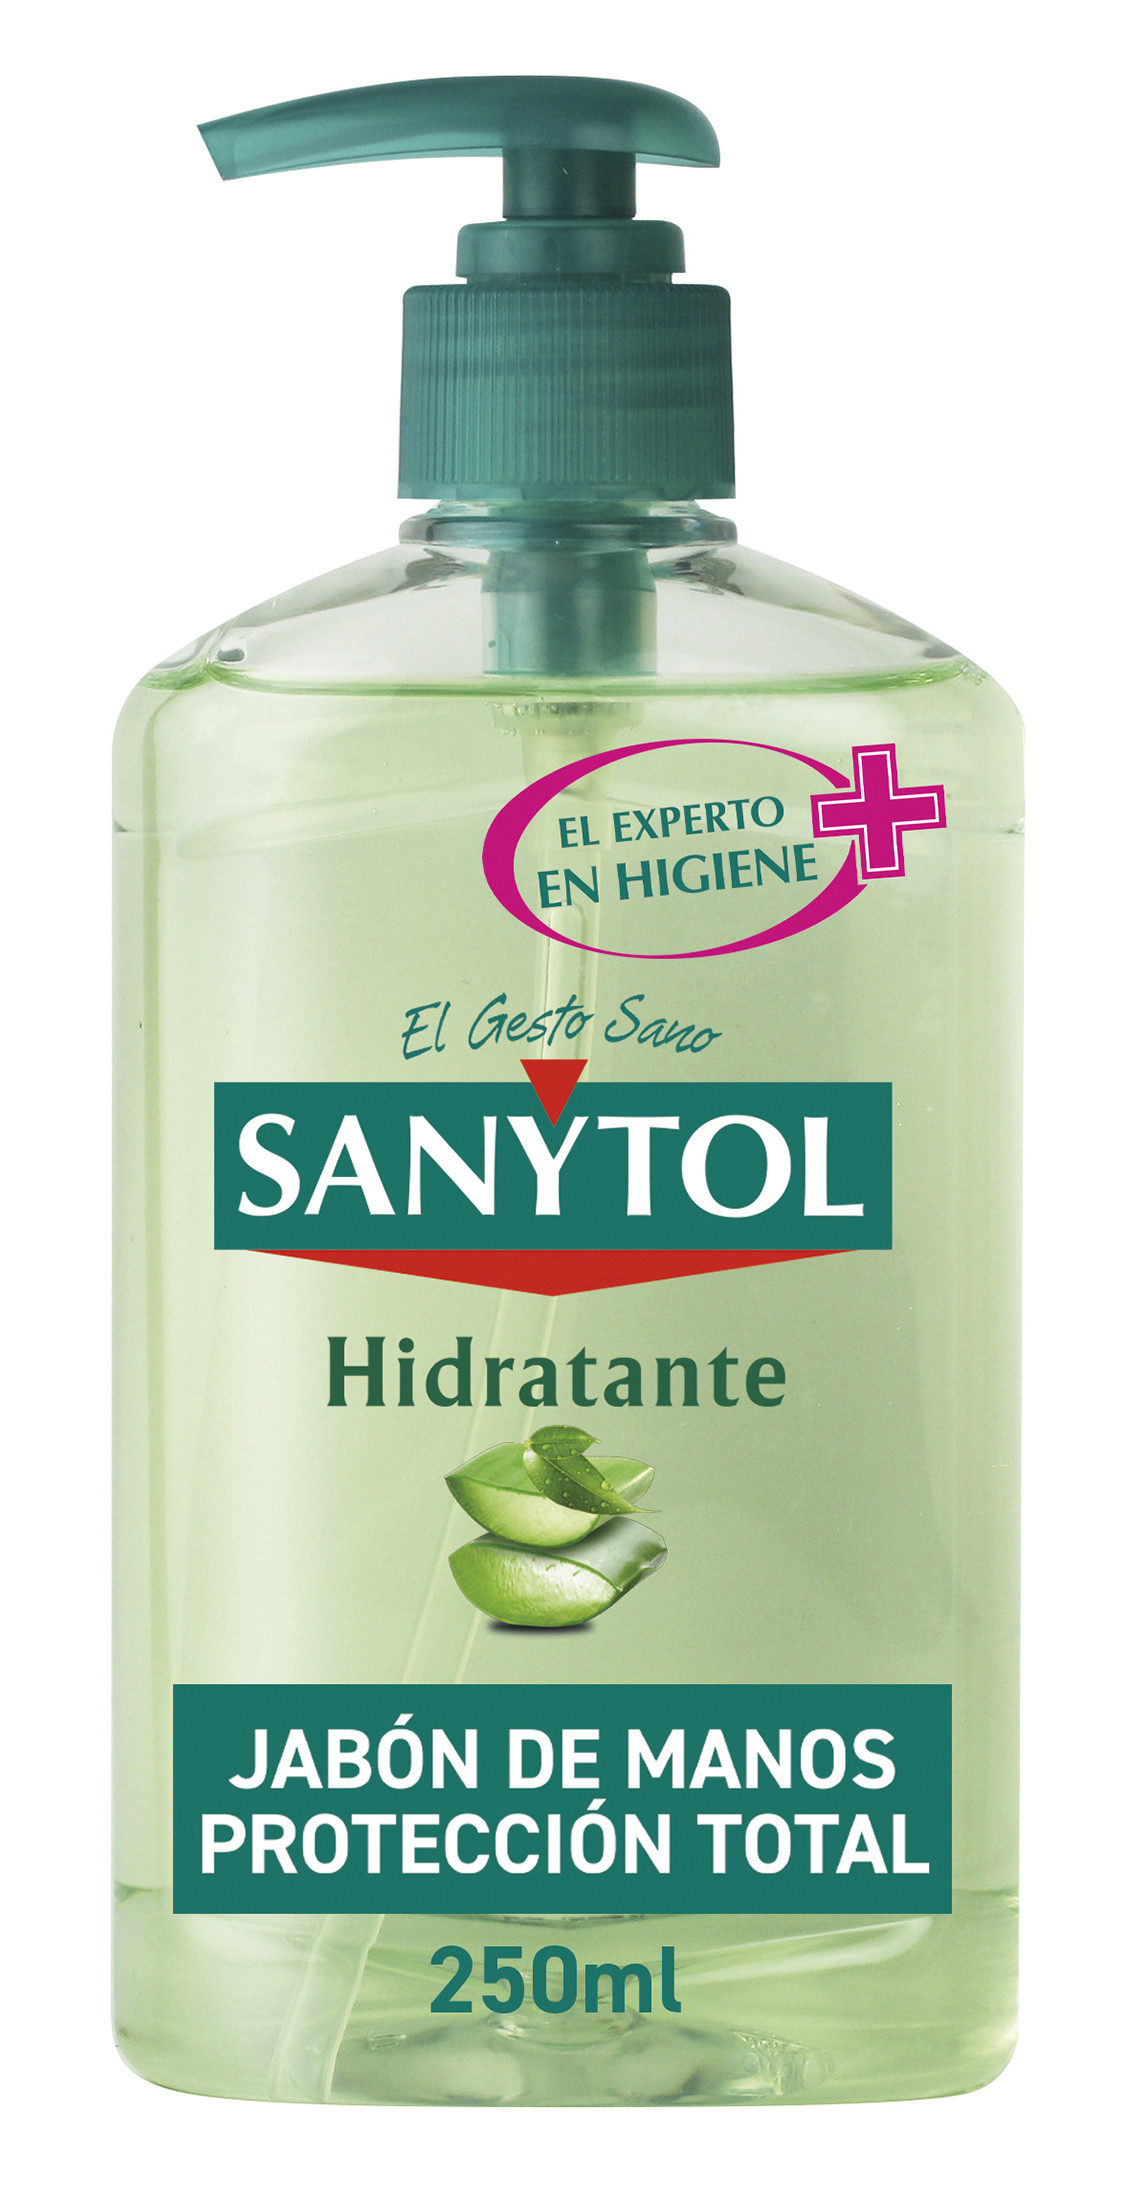 Sanytol Jabón de manos hidratante anti bacterias